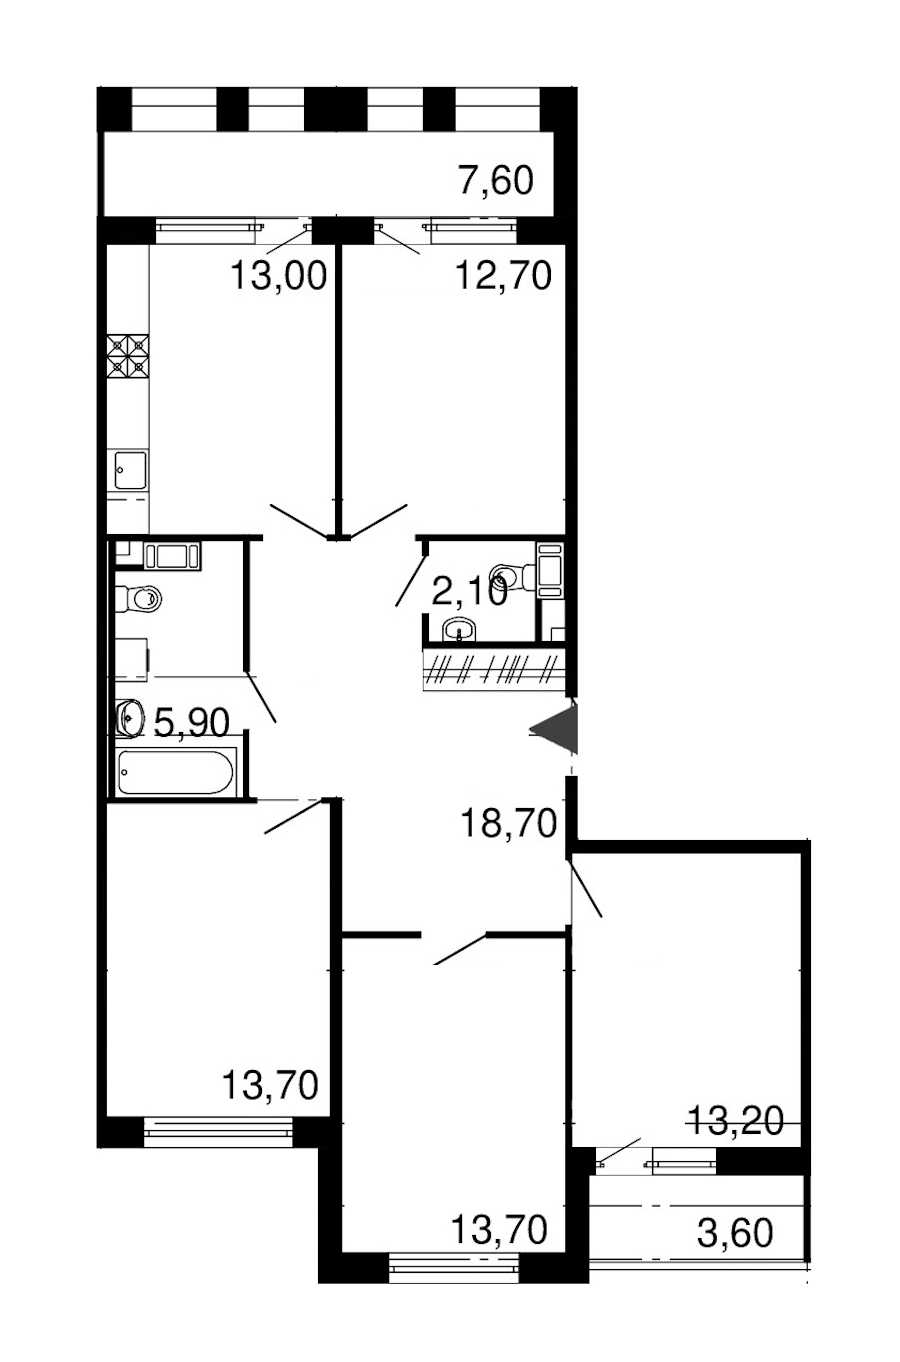 Четырехкомнатная квартира в : площадь 93 м2 , этаж: 10 – купить в Санкт-Петербурге